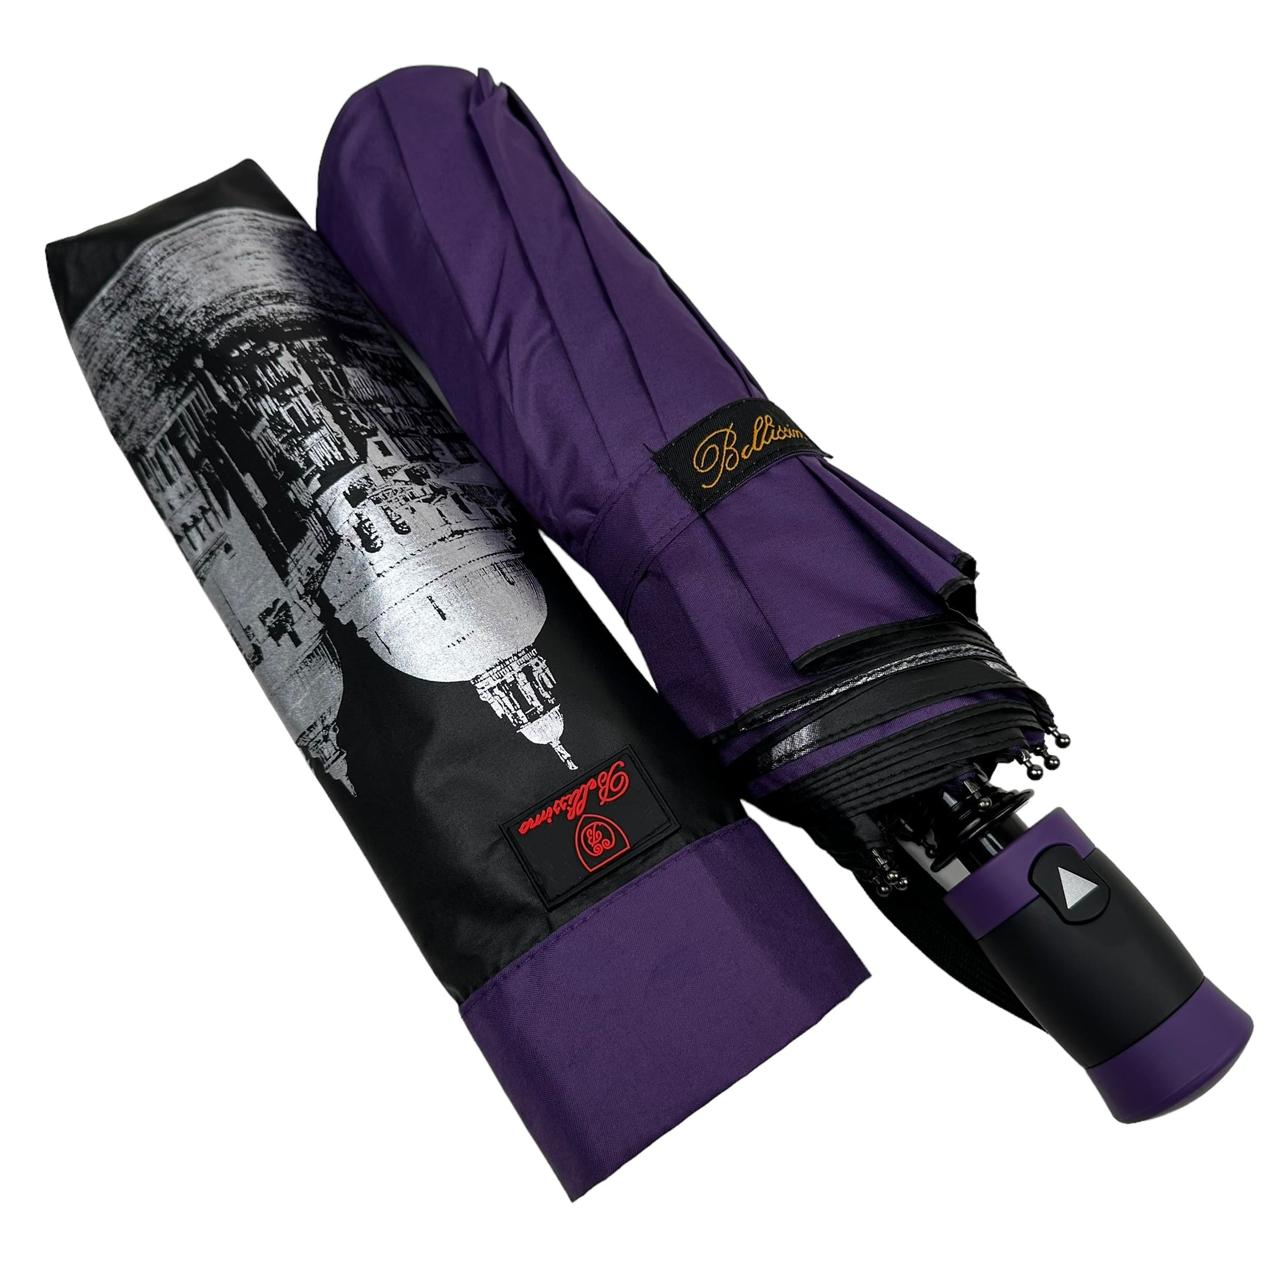 Женский складной зонтик полуавтомат Bellissima 102 см фиолетовый - фото 2